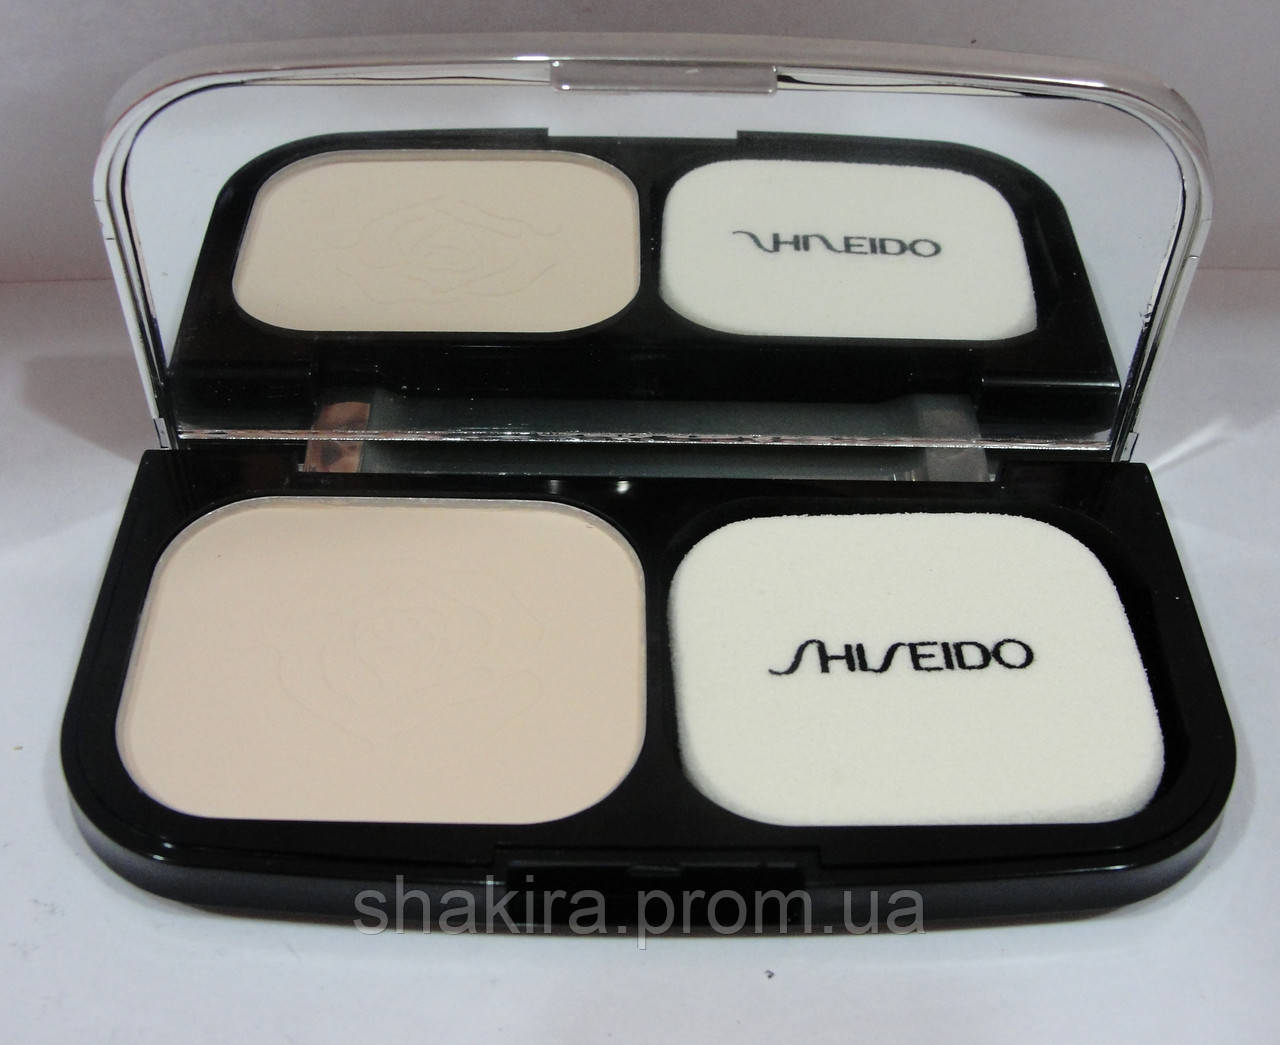 Пудра Shiseido urben beauty powder (шисейдо)No1